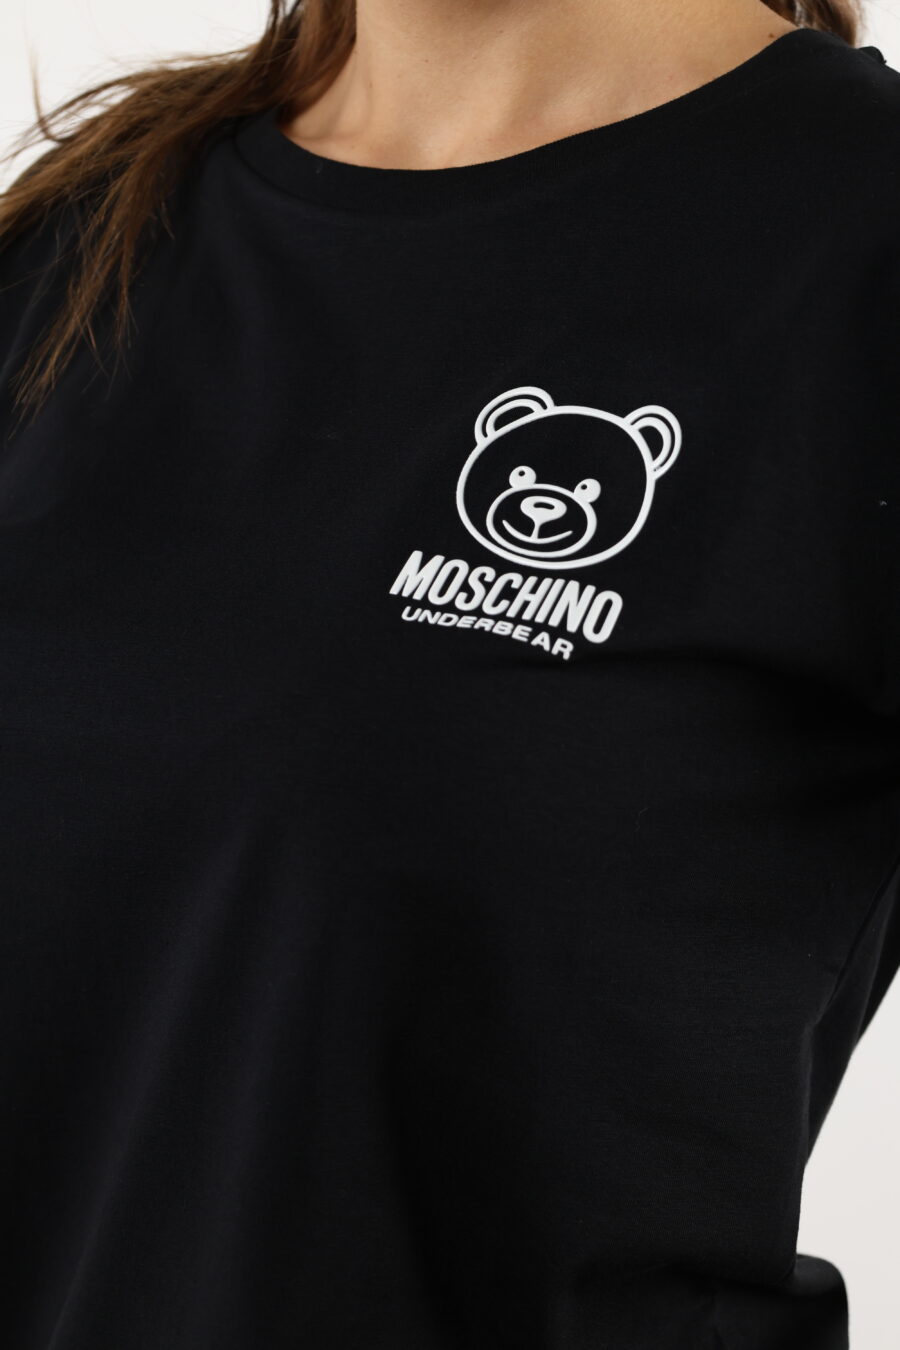 Camiseta negra con minilogo oso blanco - 110528